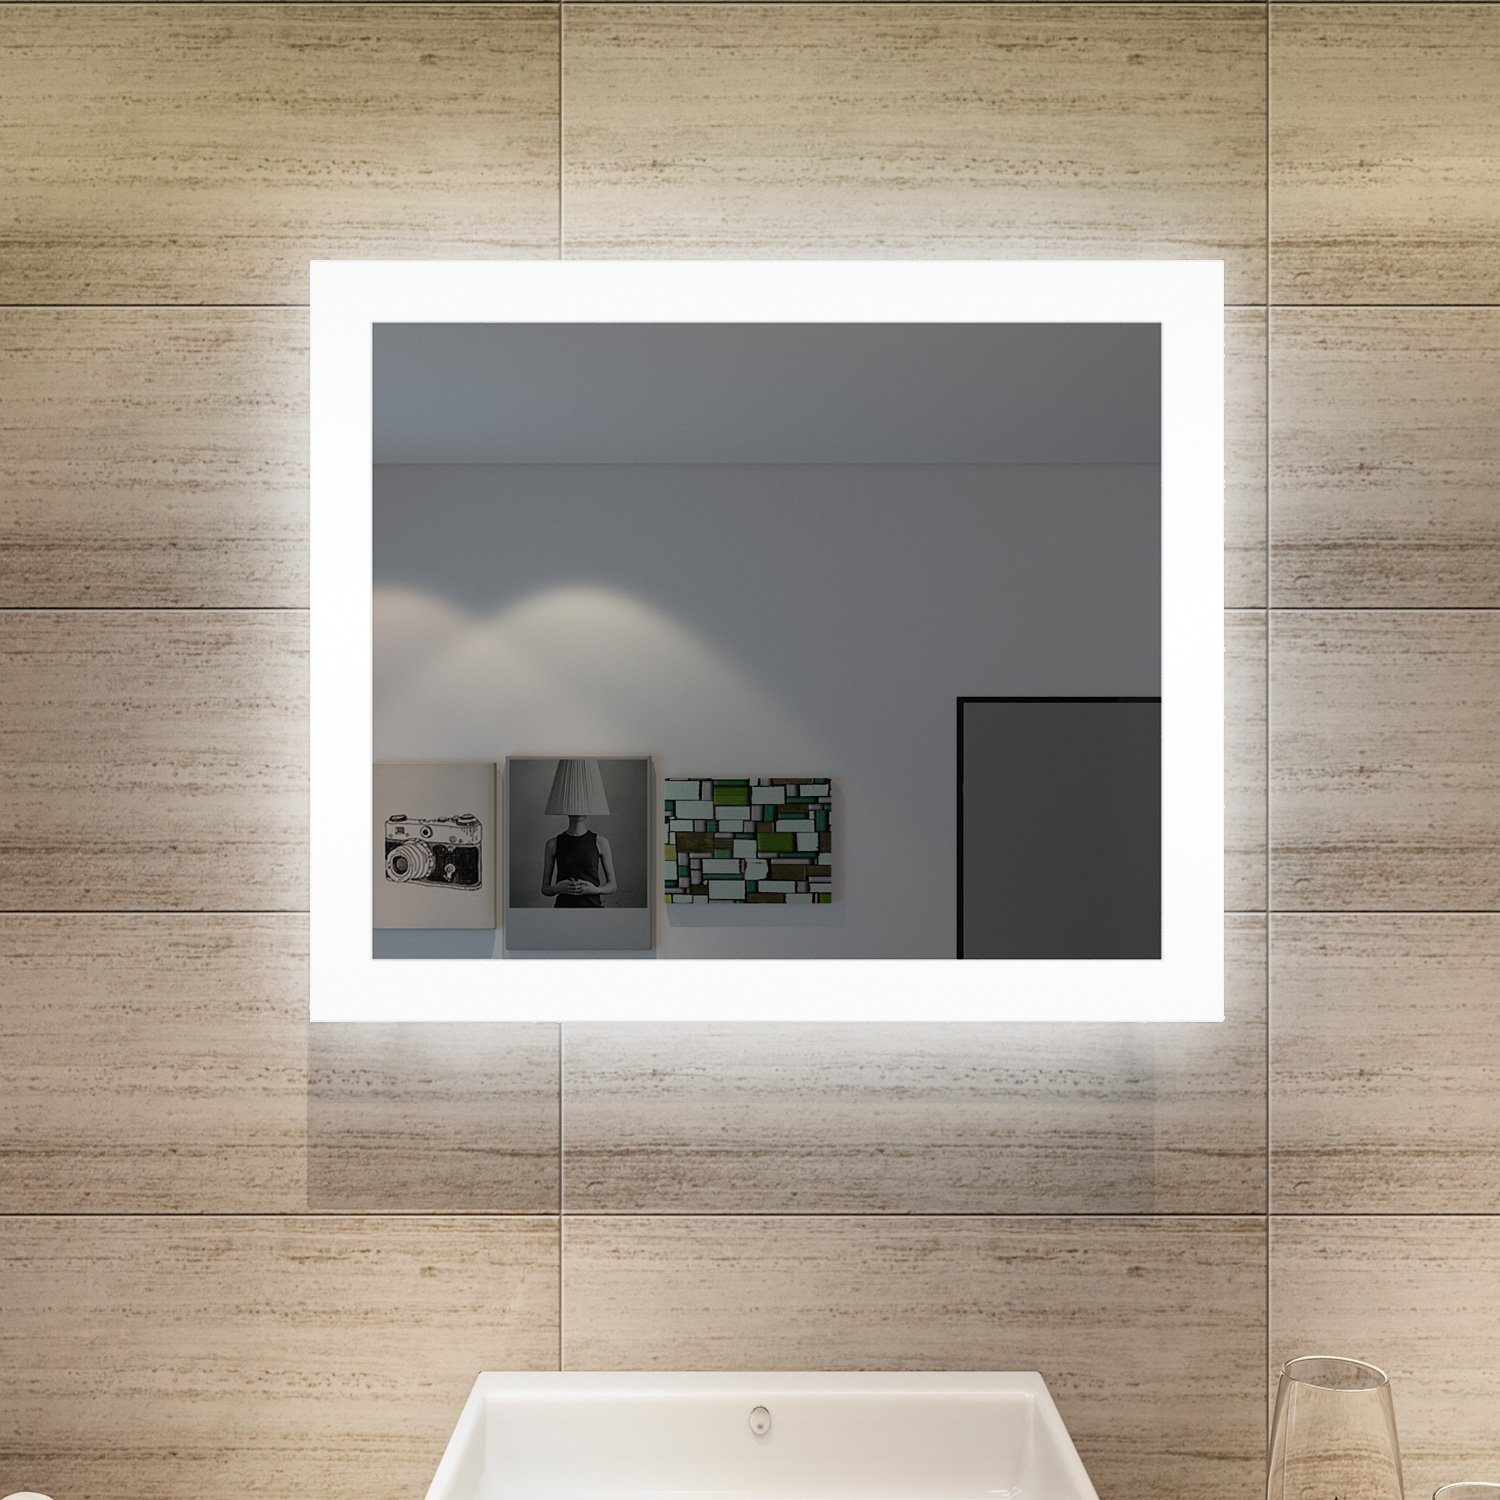 SONNI Badspiegel mit Beleuchtung Kaltweiß Lichtspiegel energiesparender Badezimmerspiegel,Wandschalter,kaltweiß,IP44, LED IP44,Wandspiegel